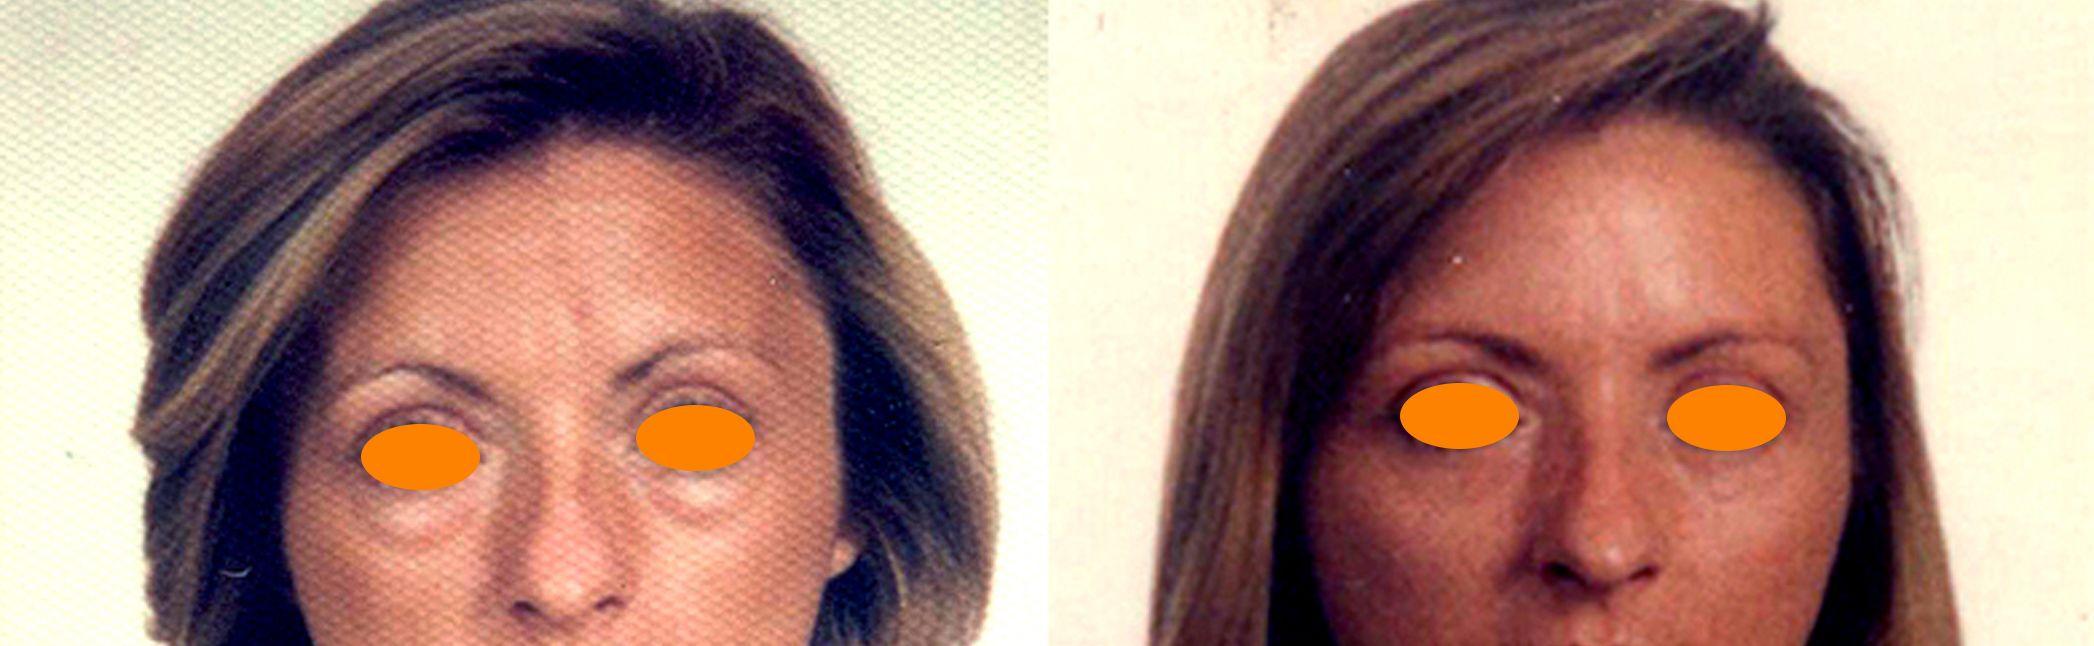 antes y después blefaroplastia